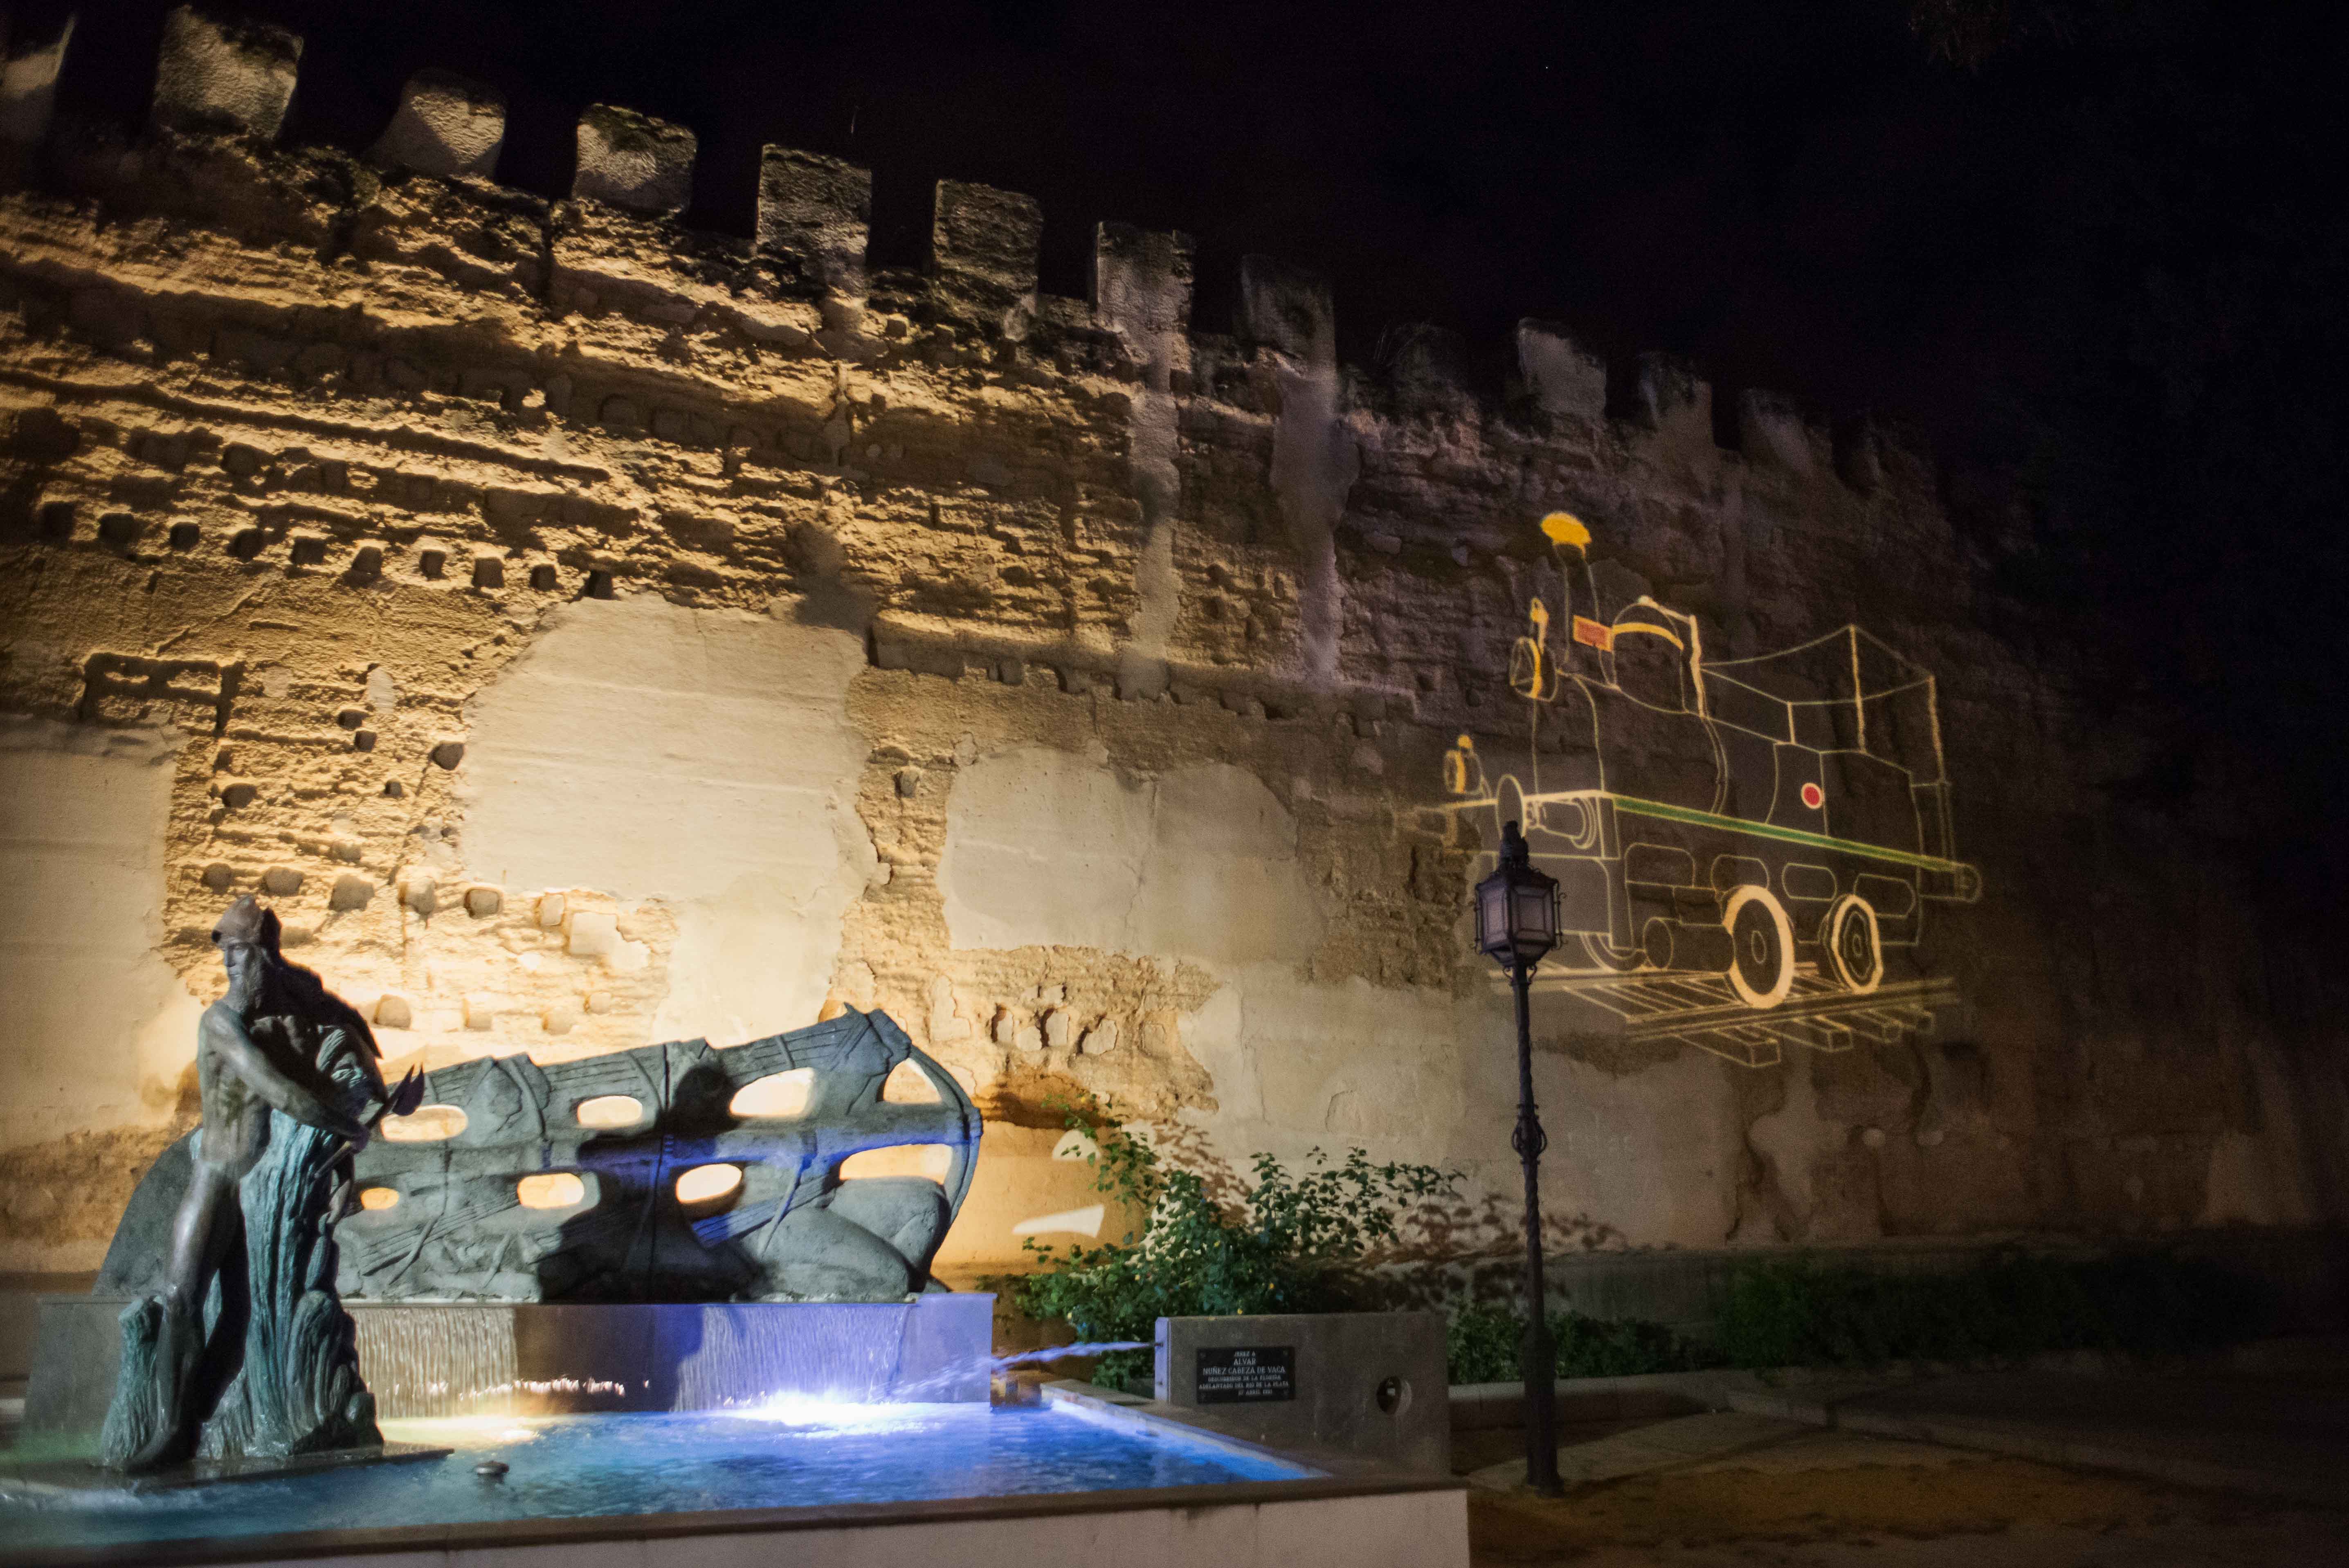 Lienzo de la muralla con el monumento a Cabeza de Vaca, en calle Ancha, bajo el efecto de la iluminación singular.   MANU GARCÍA